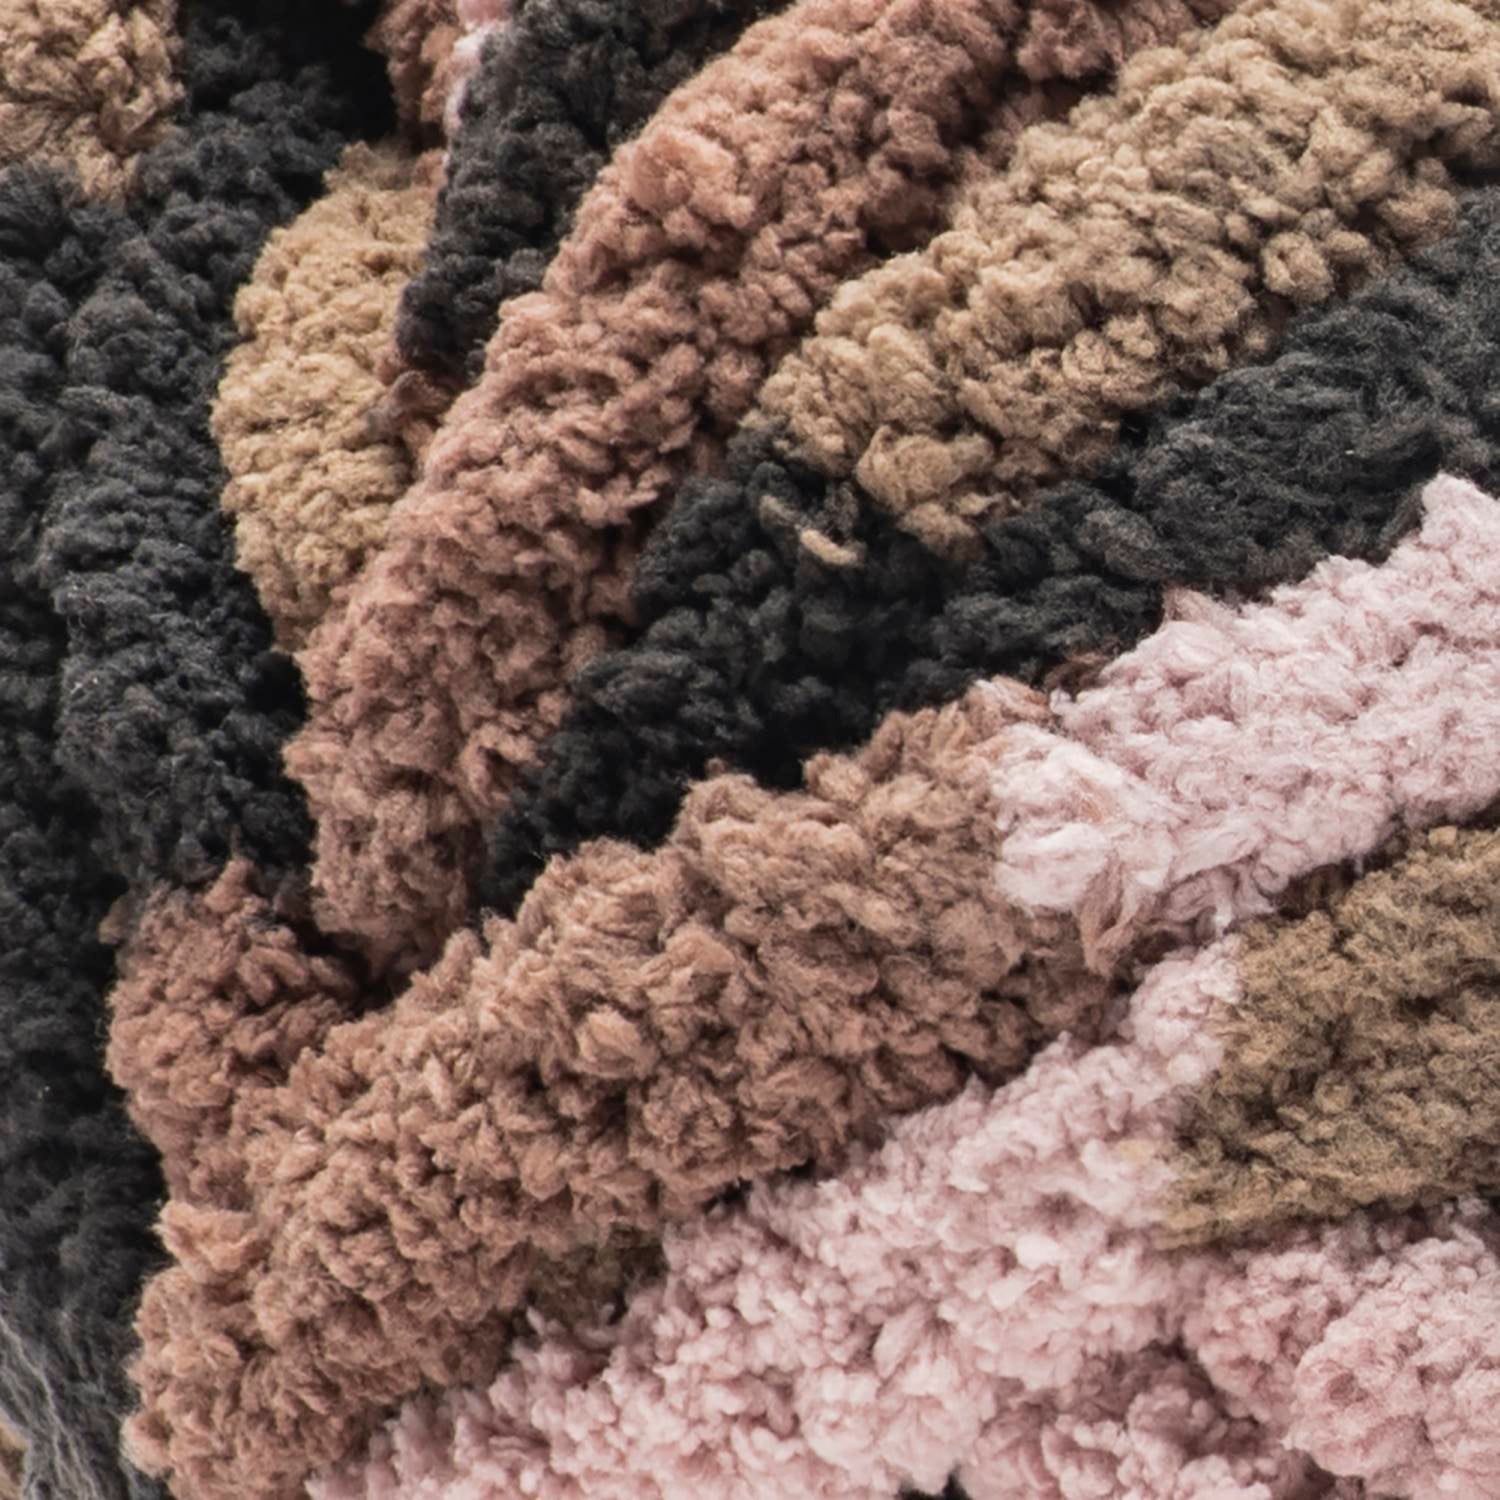  Bernat Blanket Extra Thick Blue Raspberry Yarn-1 Pack of  600g/21oz-Polyester-7 Jumbo-Knitting/Crochet